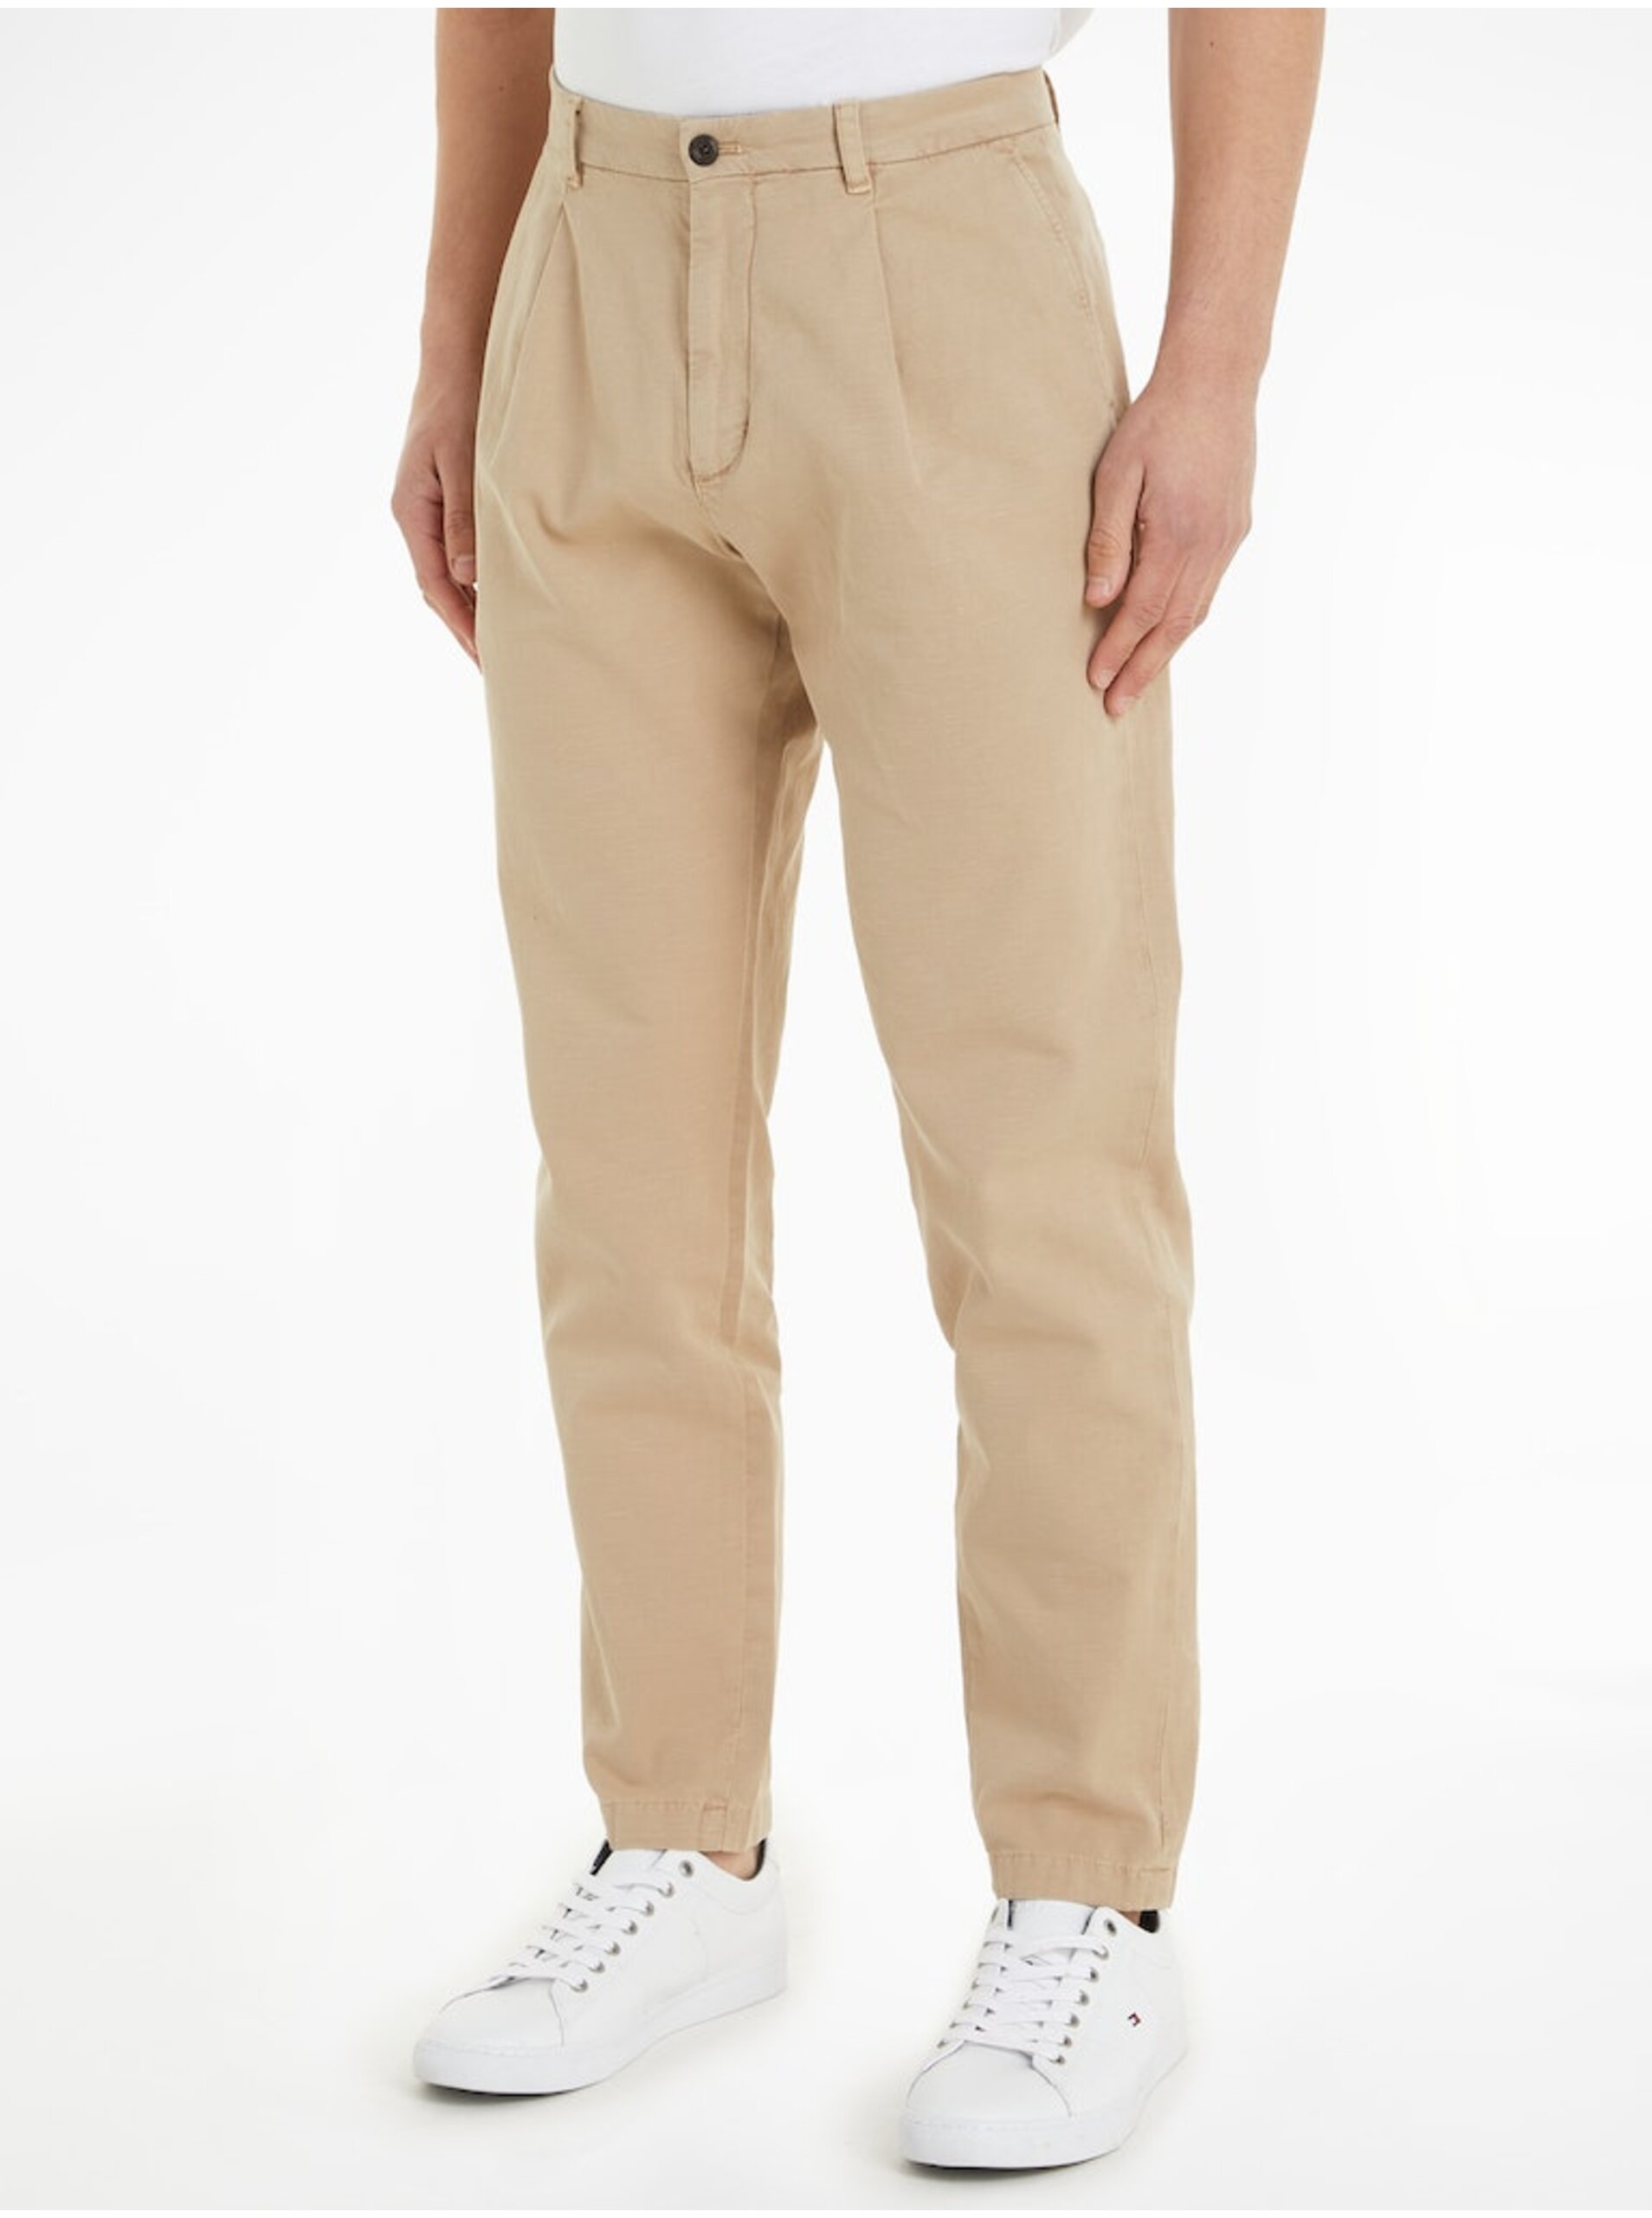 E-shop Béžové pánské chino kalhoty s příměsí lnu Tommy Hilfiger Chino Harlem